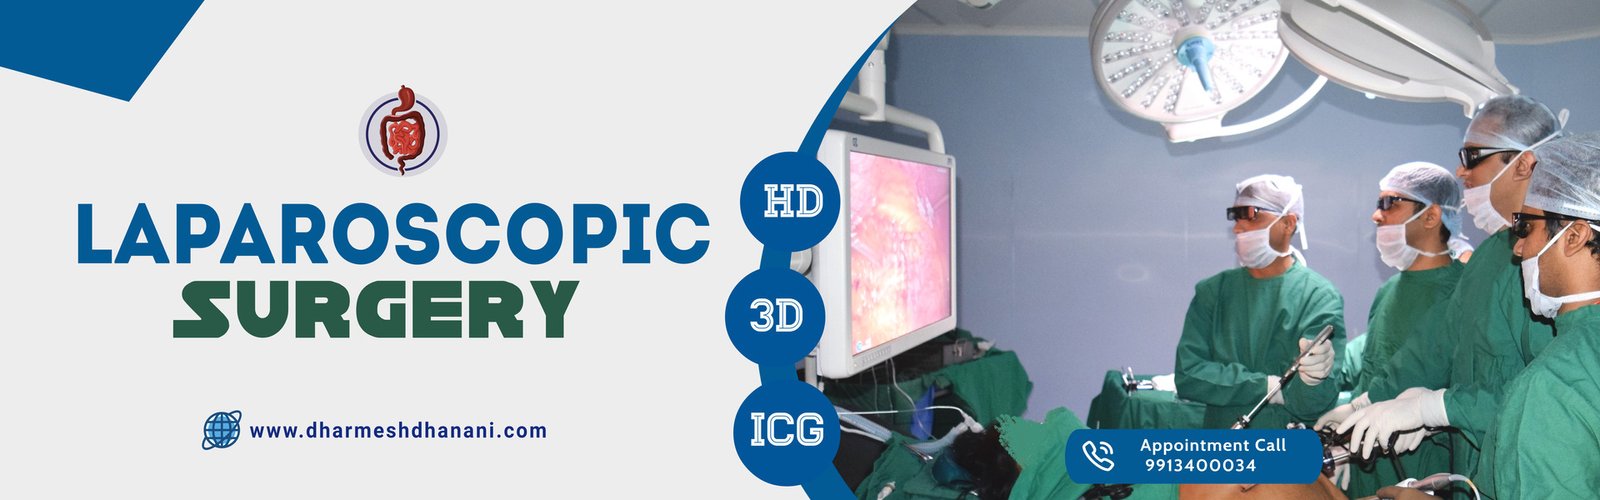 Laparoscopic-Surgery-Dr-Dharmesh-Dhanani.jpg